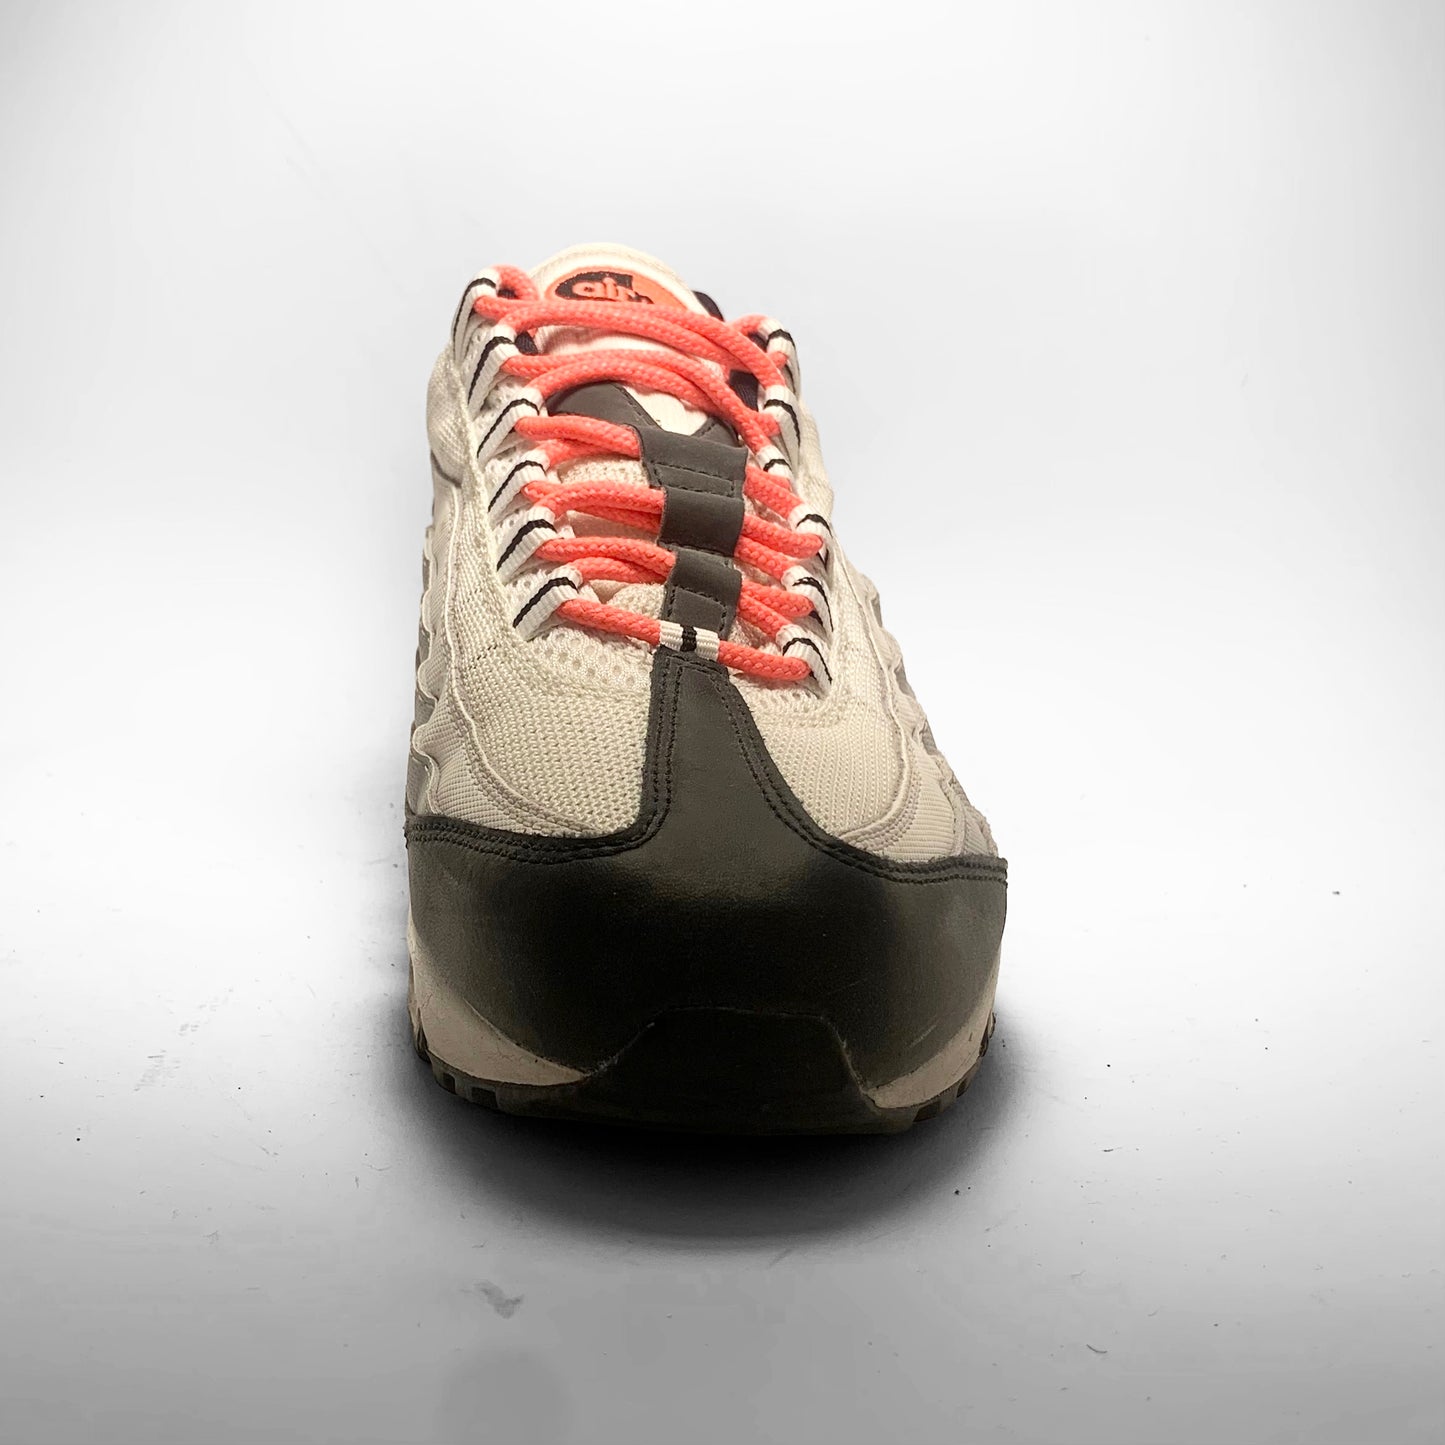 Nike Air Max 95 ‘Hot Lava’ (2008)